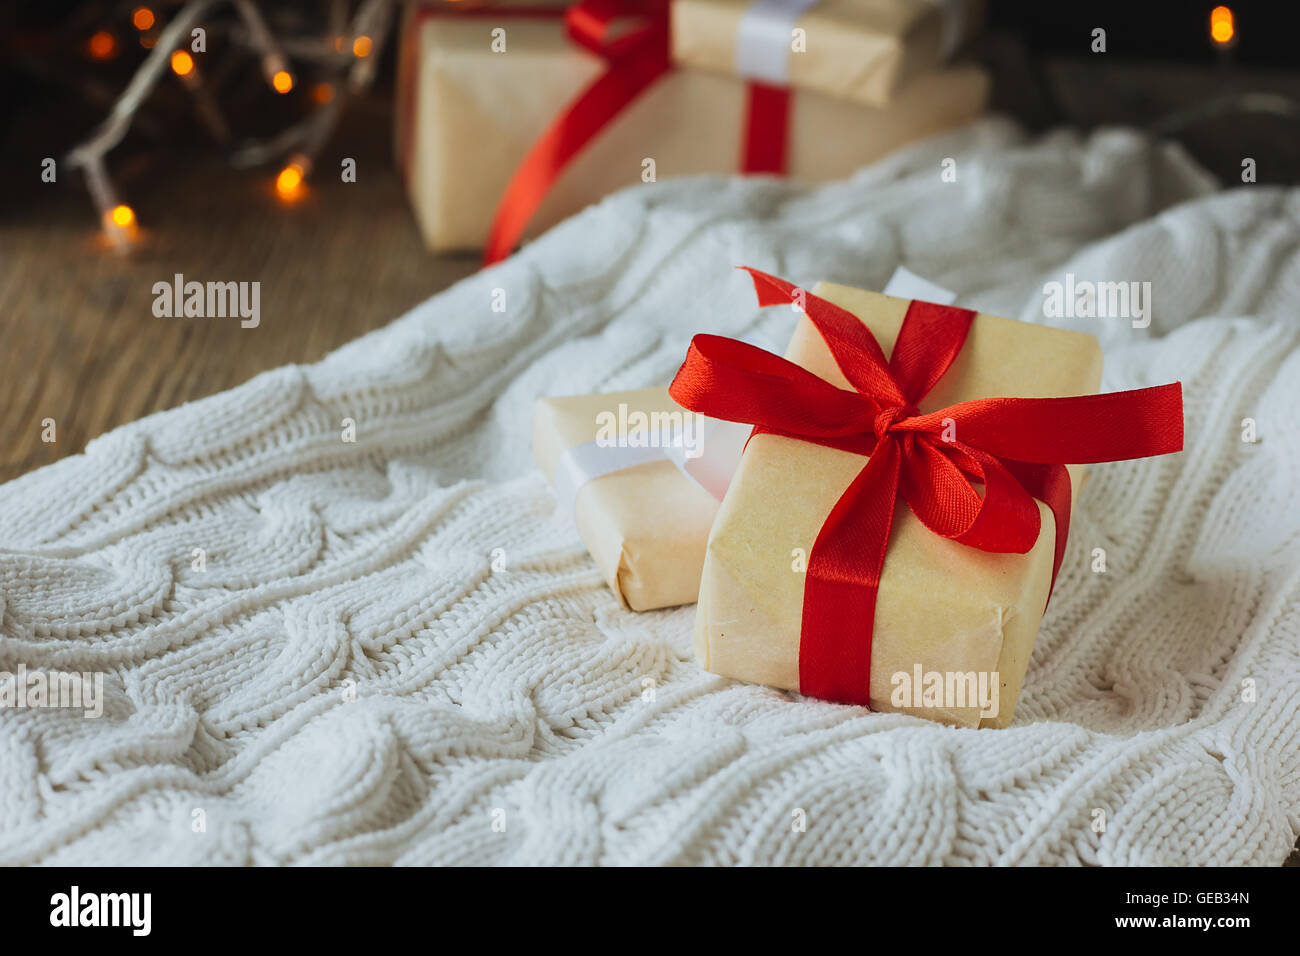 Deux cadeaux de Noël qu'on white pull selective focus Banque D'Images